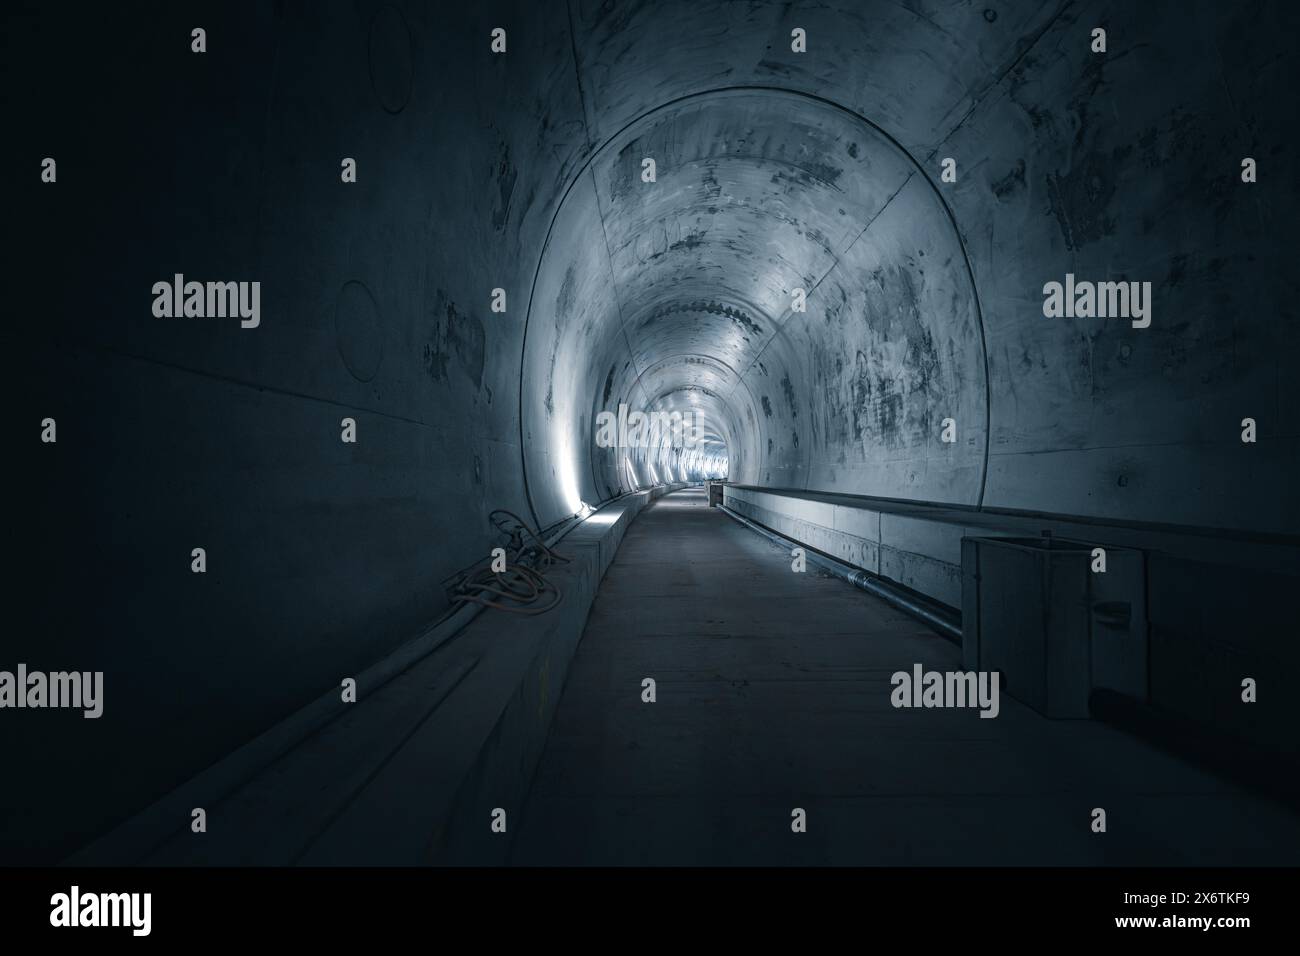 Ein leerer Tunnel mit Betonwänden und Lichtquellen an den Seiten, der eine dunkle, geheimnisvolle Atmosphäre hat, Tunnelbau Hermann Hesse Bahn Stockfoto